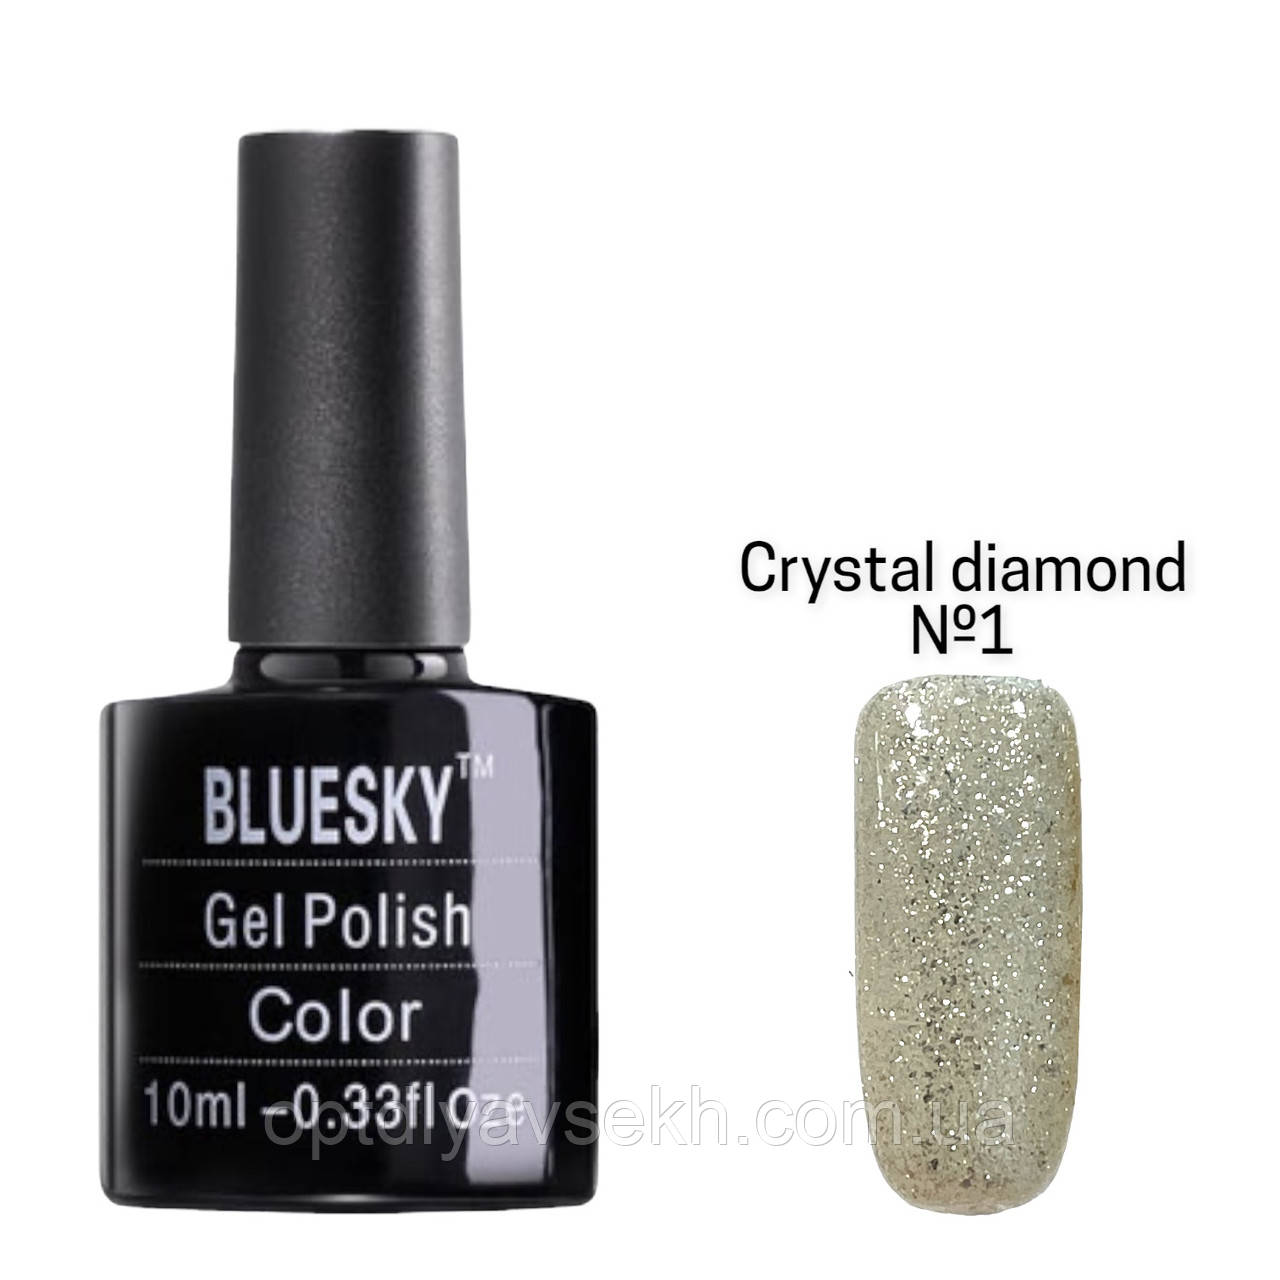 Кольоровий гель-лак Bluesky для манікюру та педикюру, 10 мл. Crystal diamond №1